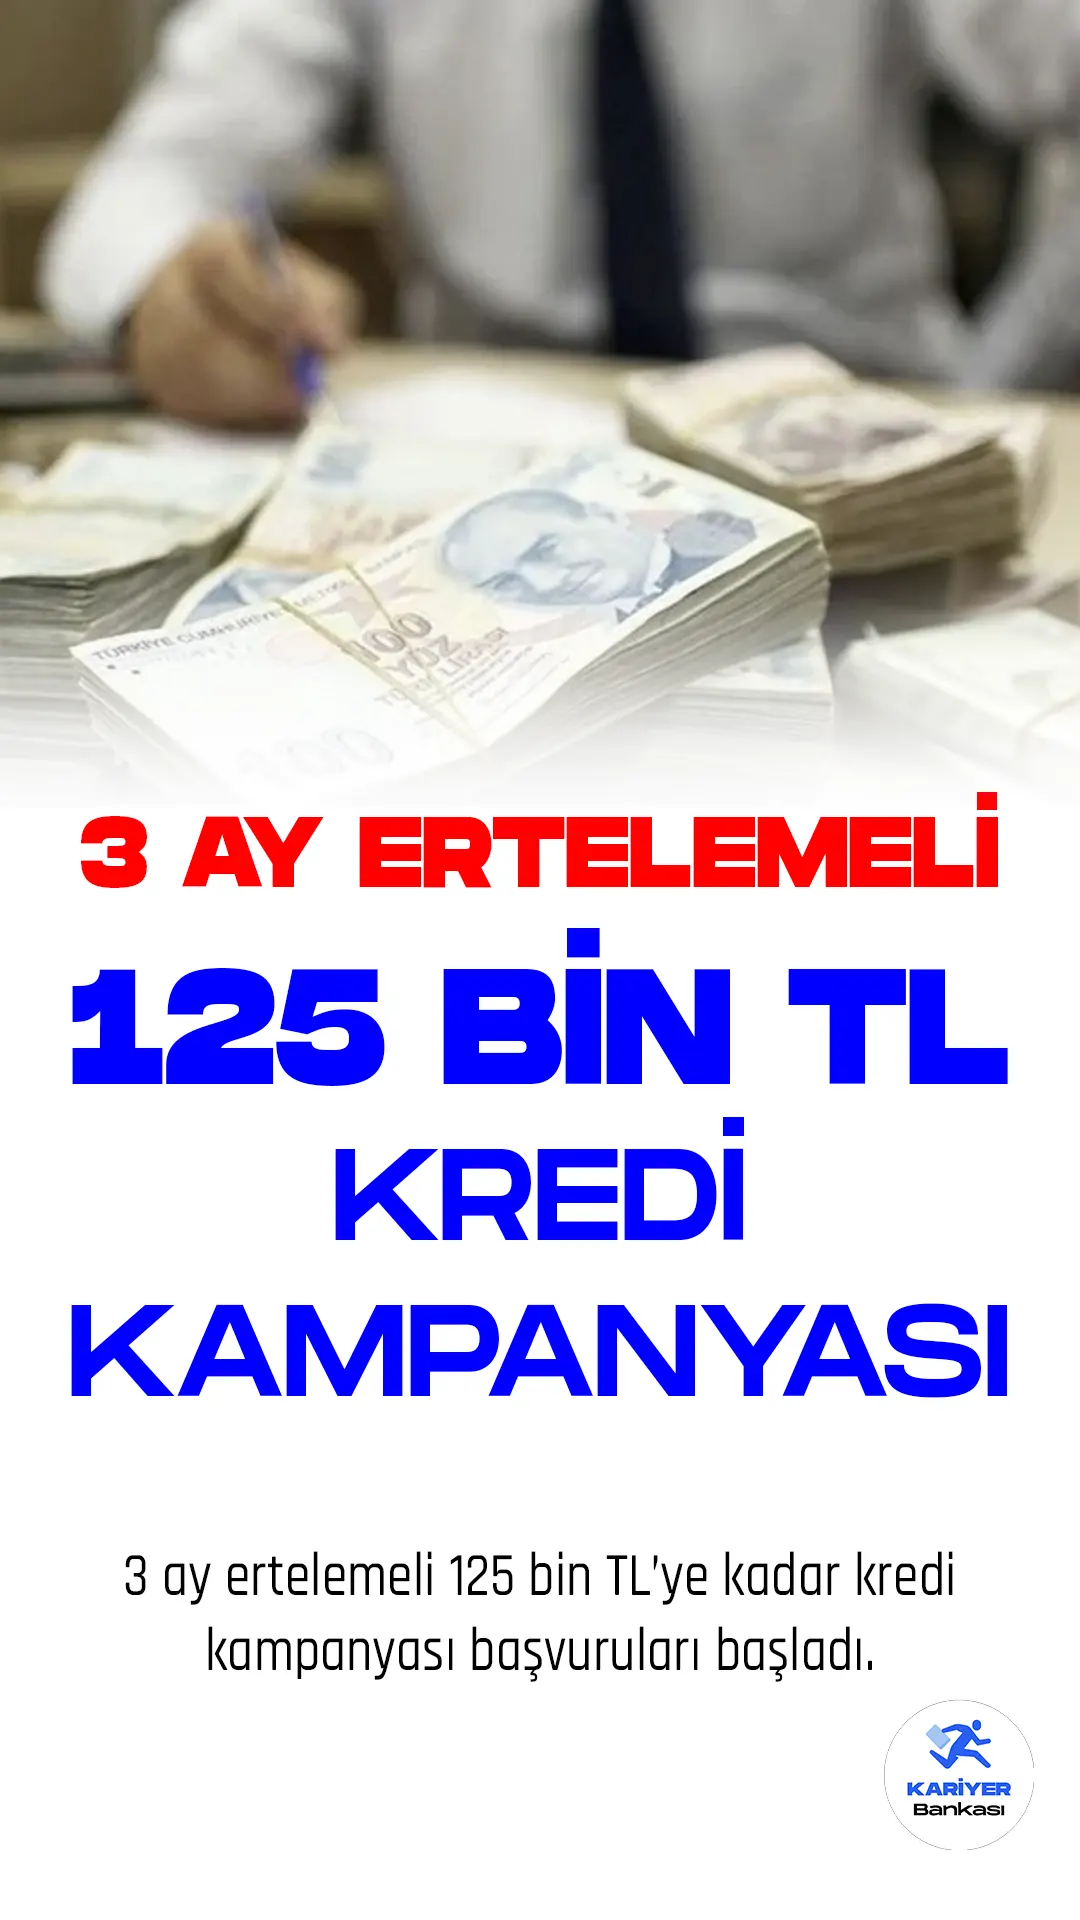 Vakıfbank'tan 125 Bin TL'ye Kadar 3 Ay Ertelemeli Kredi Kampanyası!V